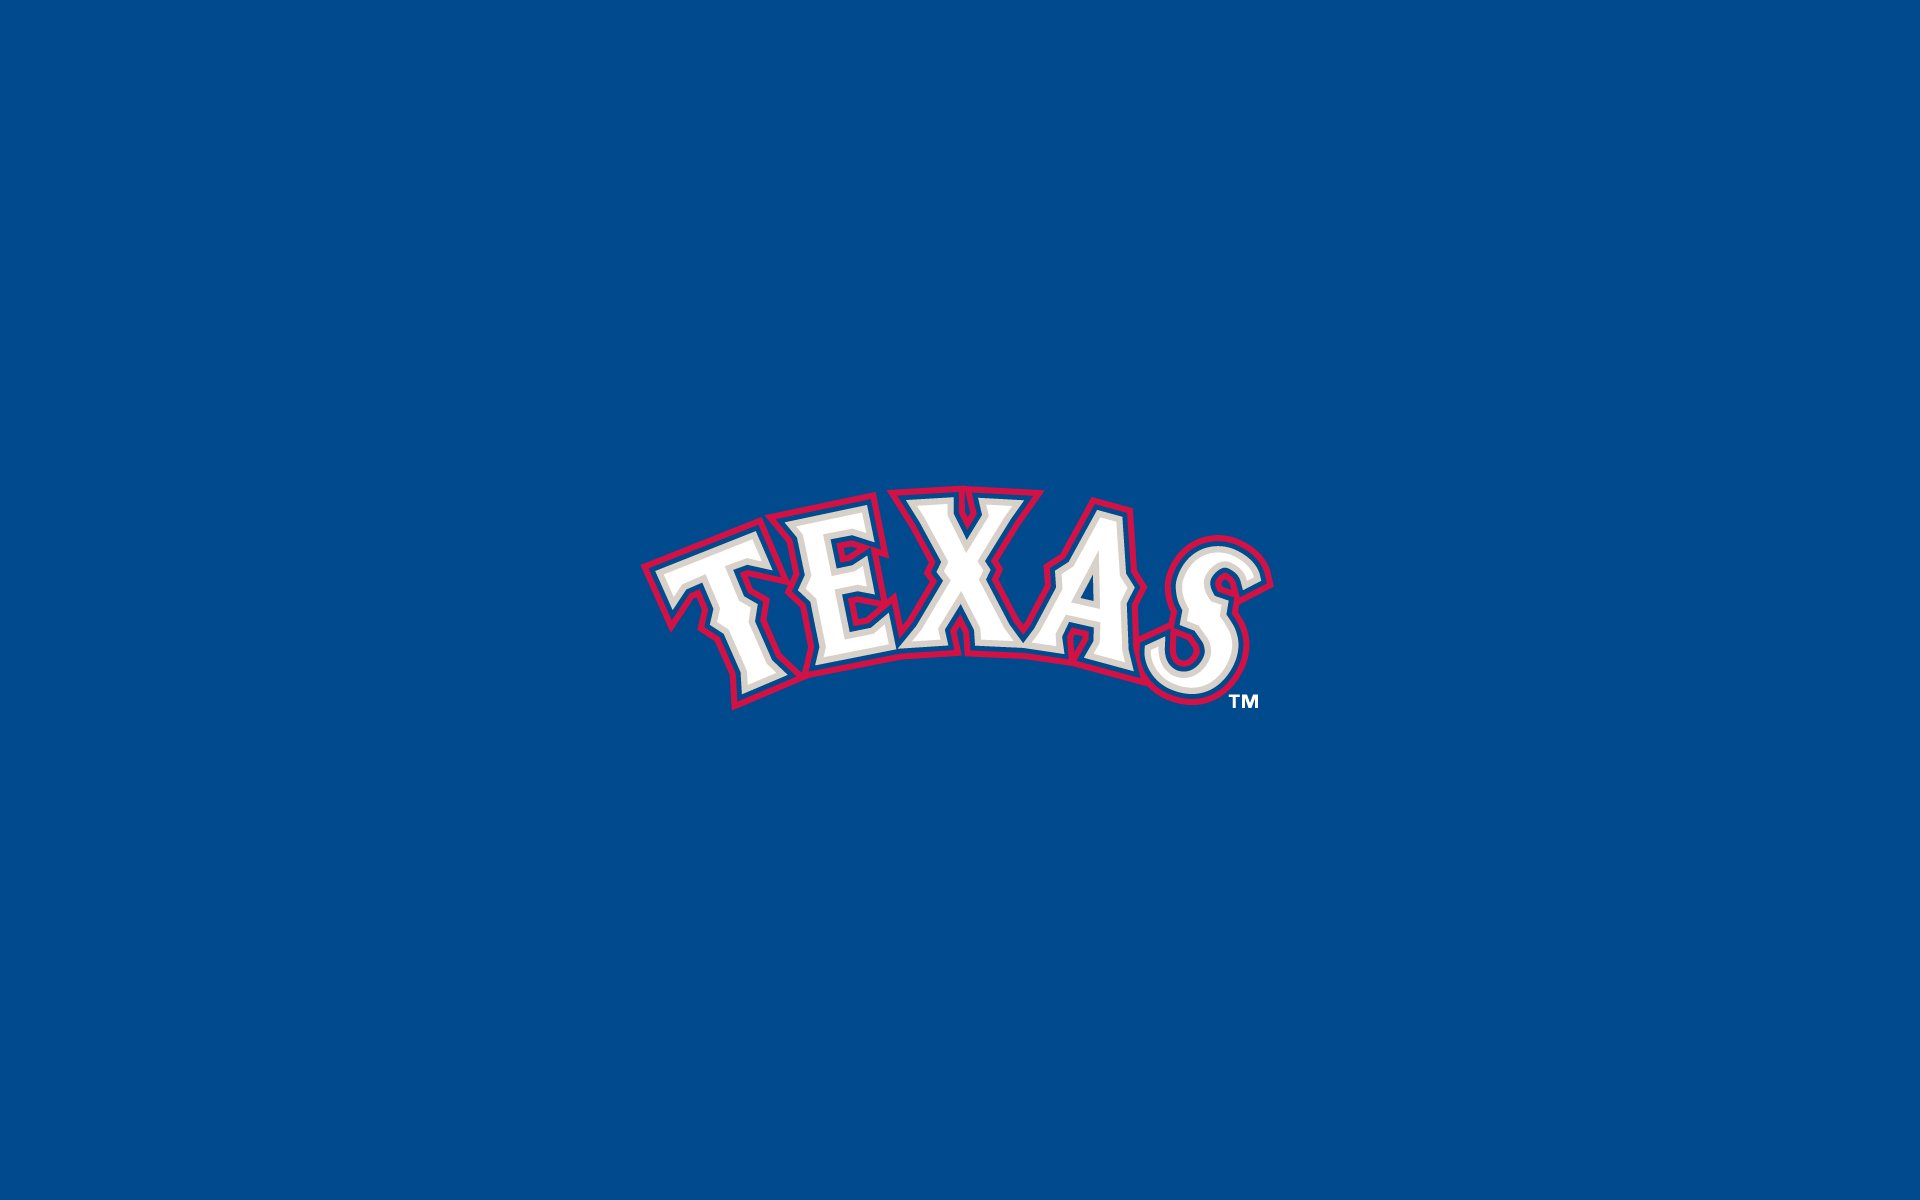 Texas Rangers Baseball Mlb Wallpaper Background